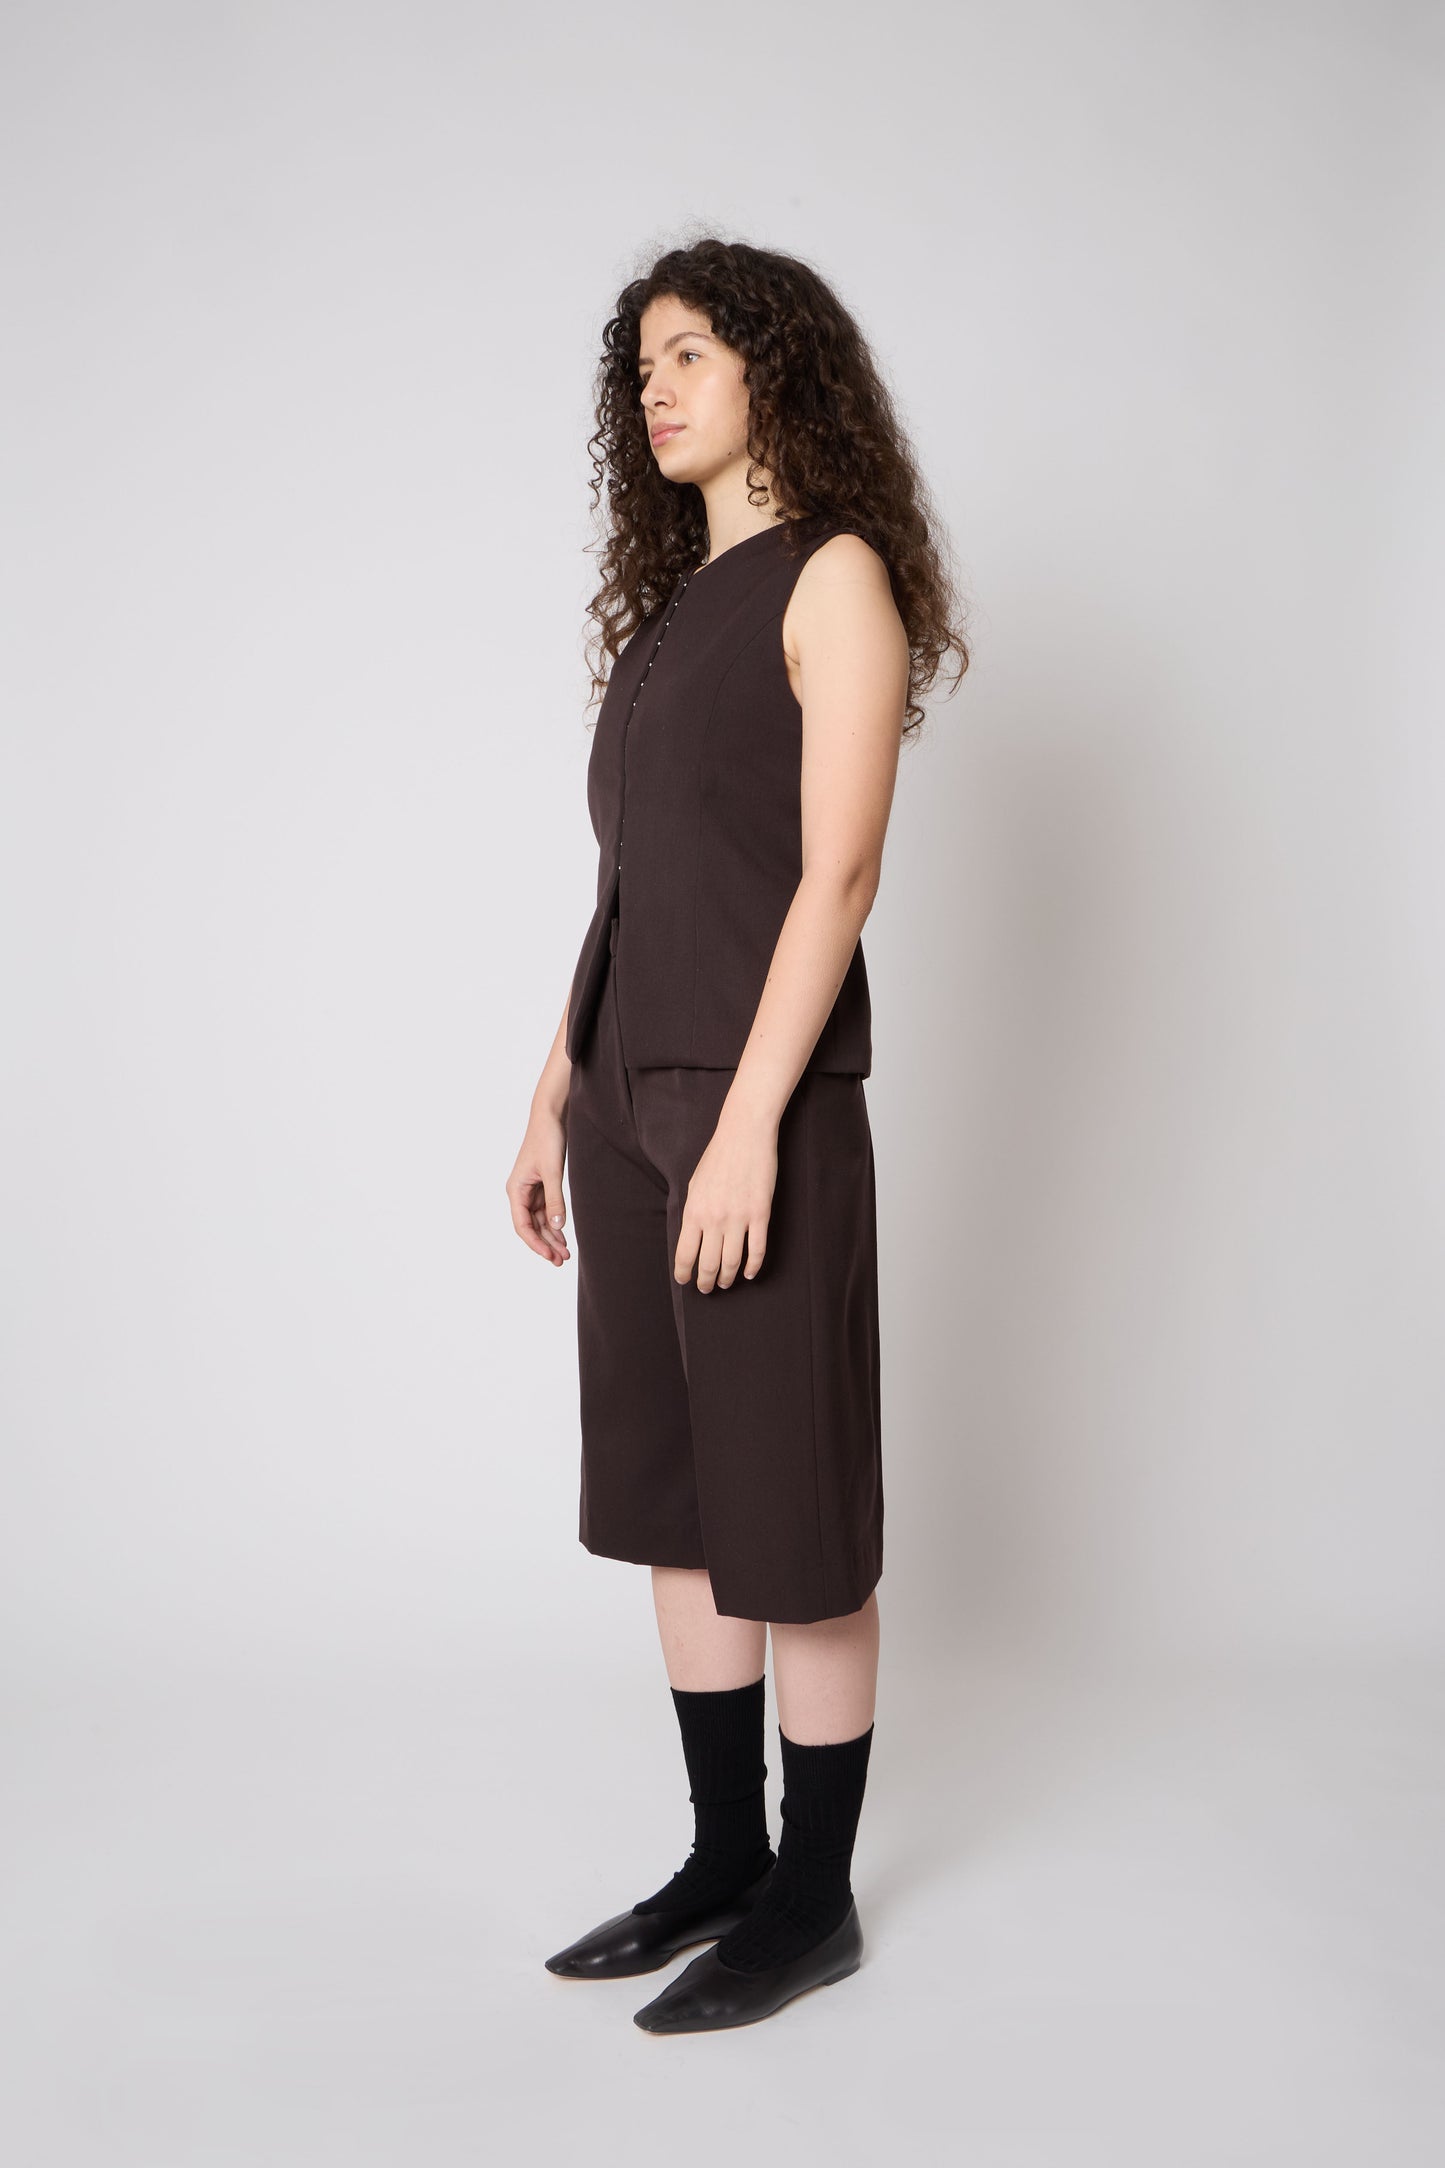 Vivienne Vest in Brown Wool